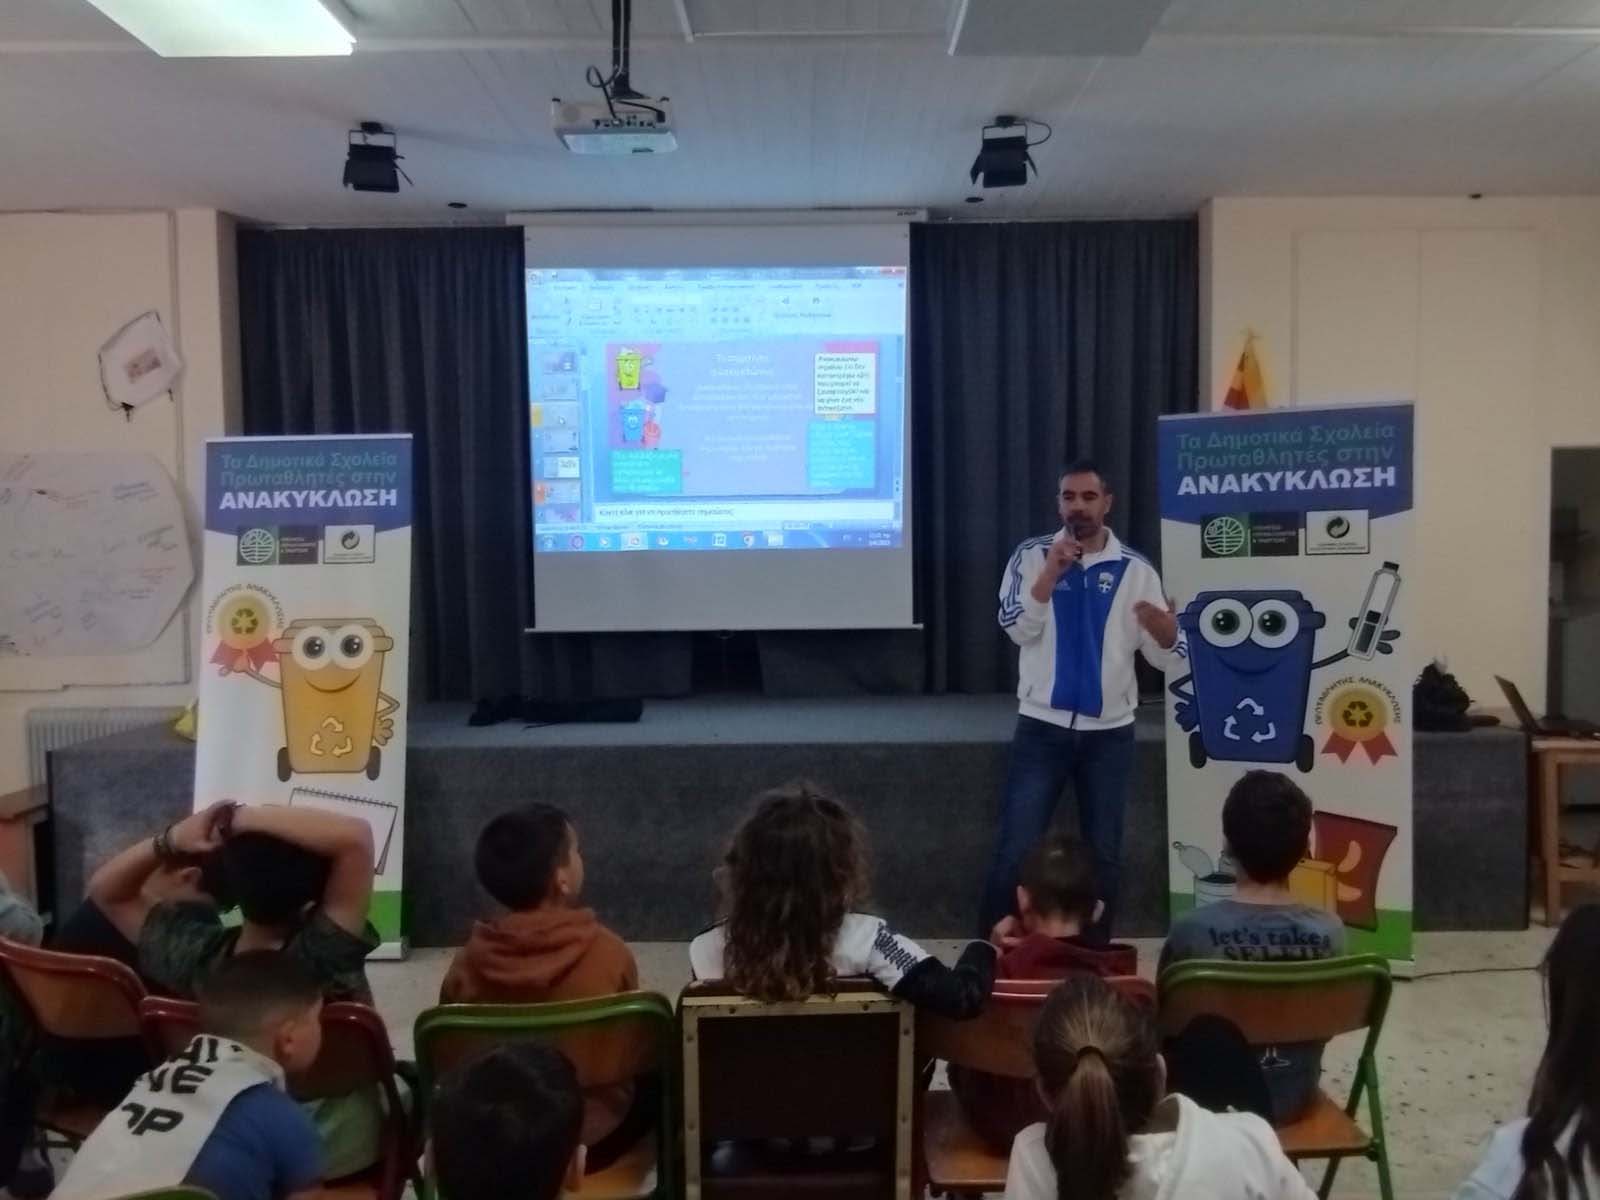 Δήμος Παιανίας: Στα χέρια των παιδιών το μέλλον του τόπου μας - Πρόγραμμα Περιβαλλοντικής Εκπαίδευσης σε σχολεία του δήμου